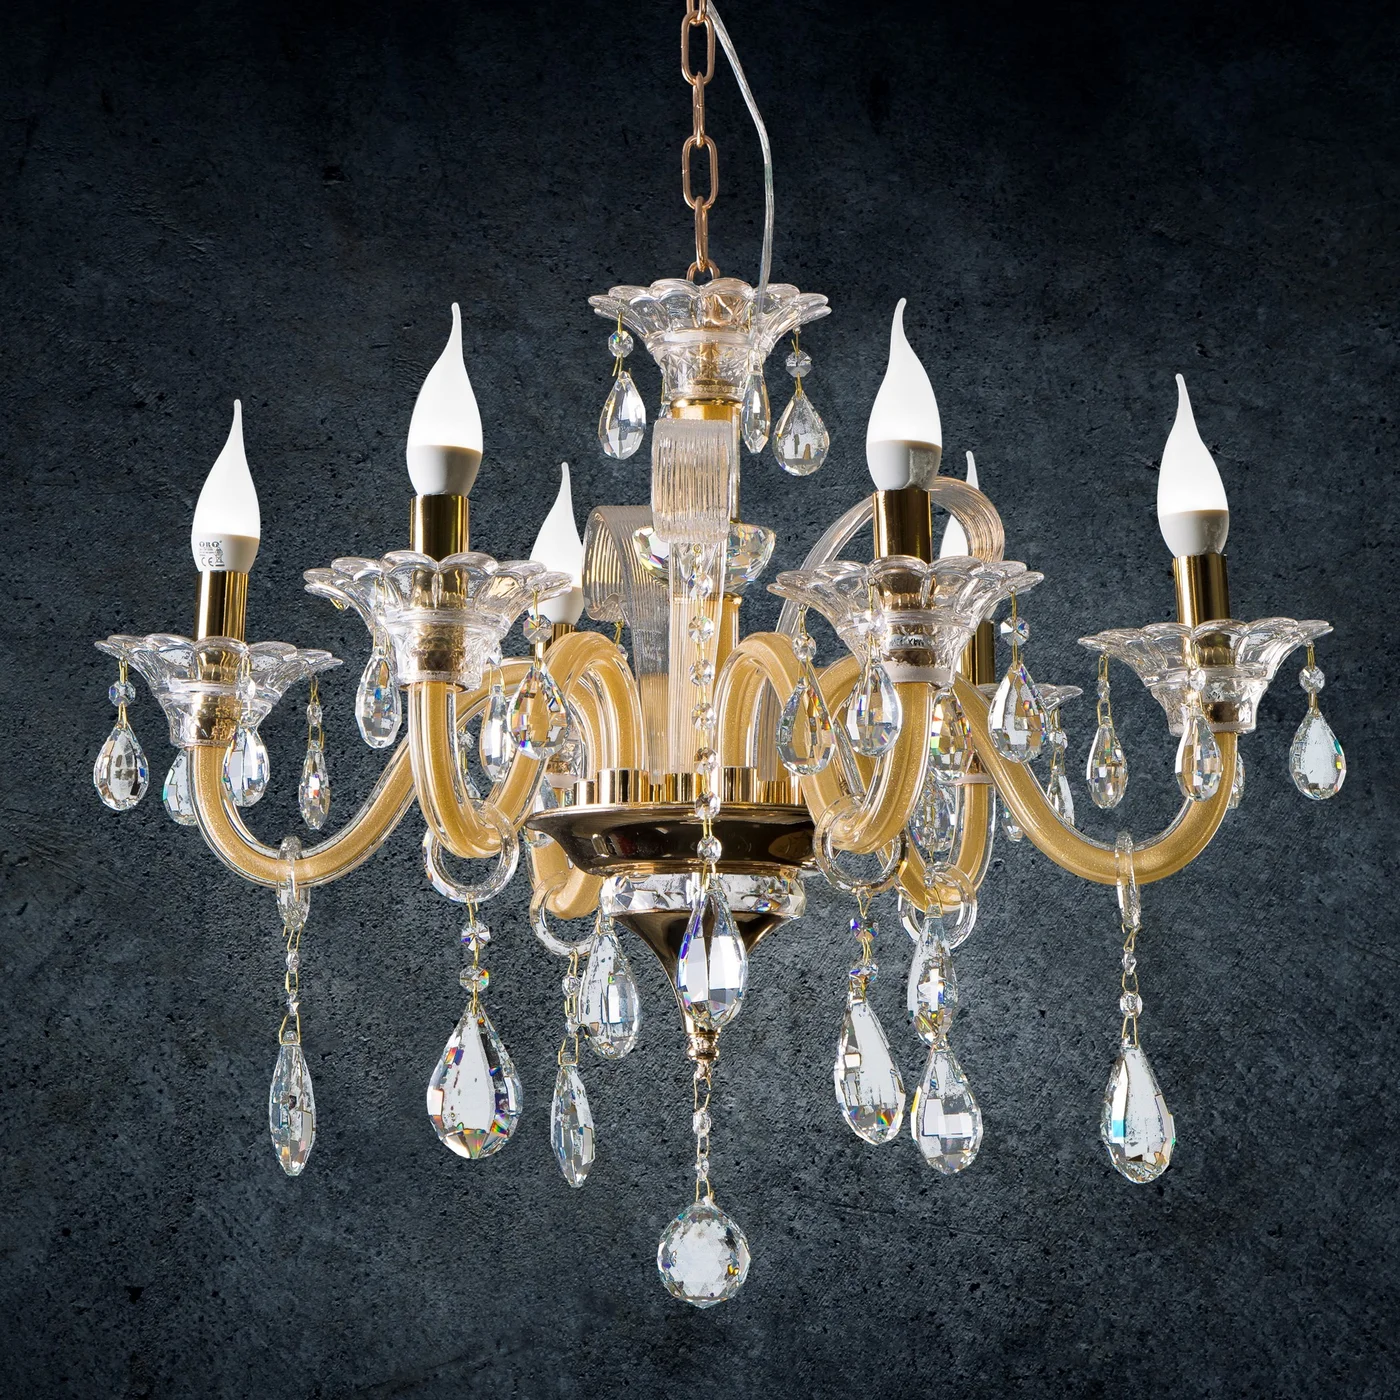 Lampa dekoracyjna GLITTER sześcioramienny żyrandol z kryształami